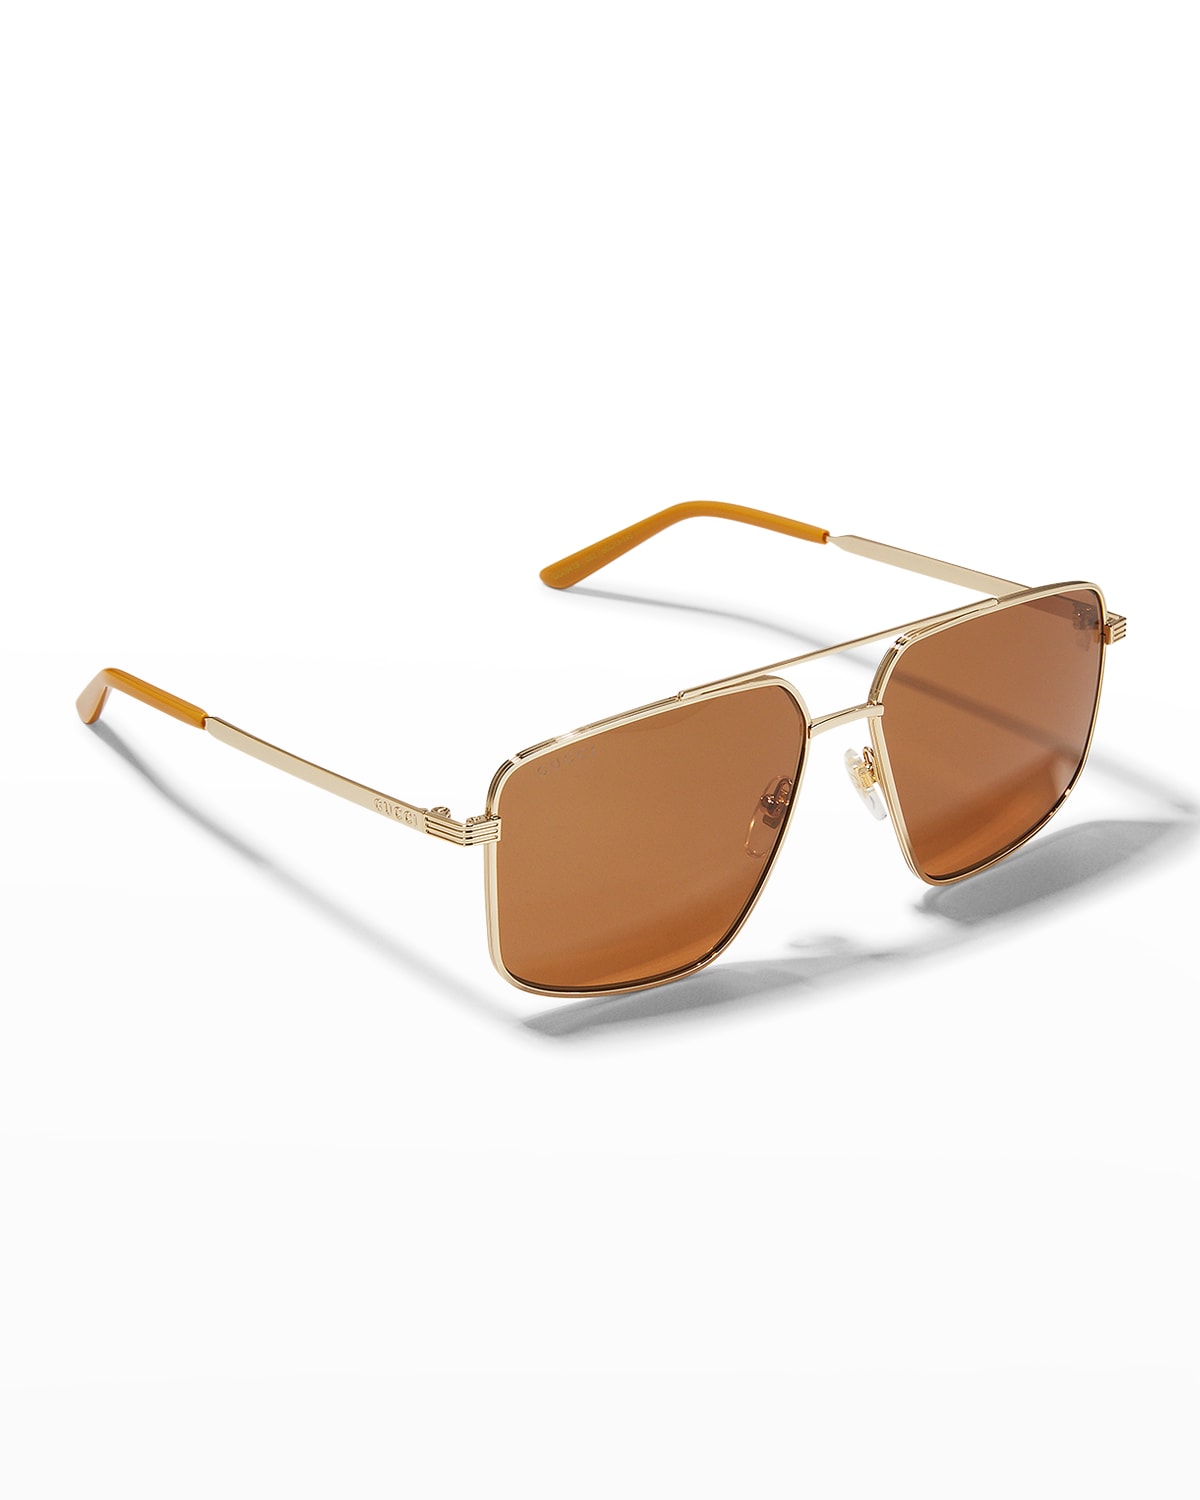 Gucci Men's Geo Double-bridge Sunglasses In 712 Gold